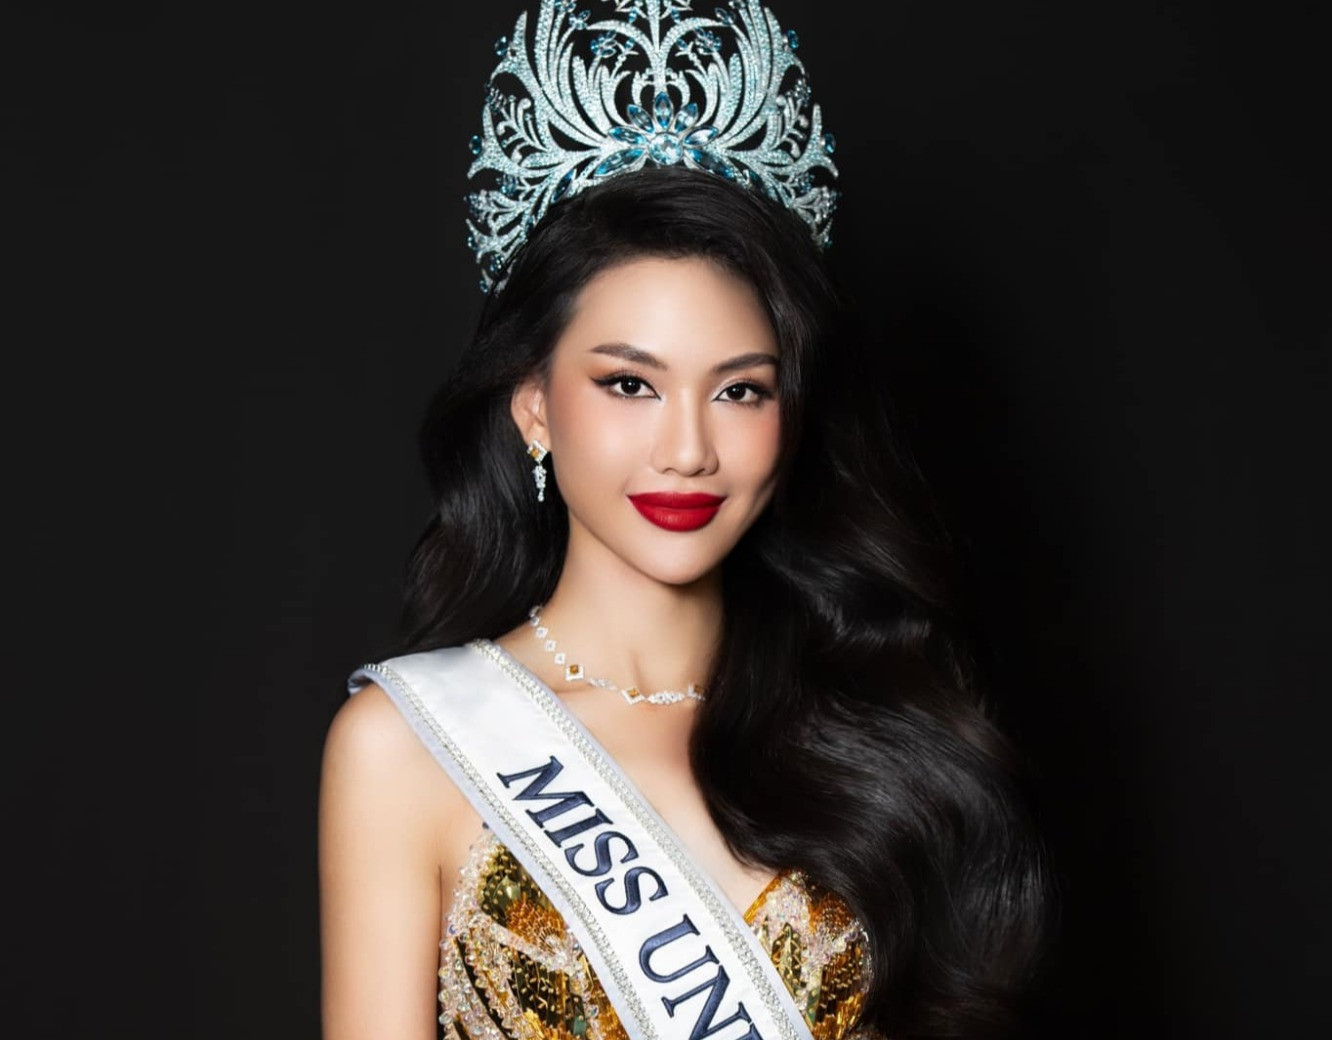 Hoa hậu Bùi Quỳnh Hoa ân hận vì từng hít bóng cười